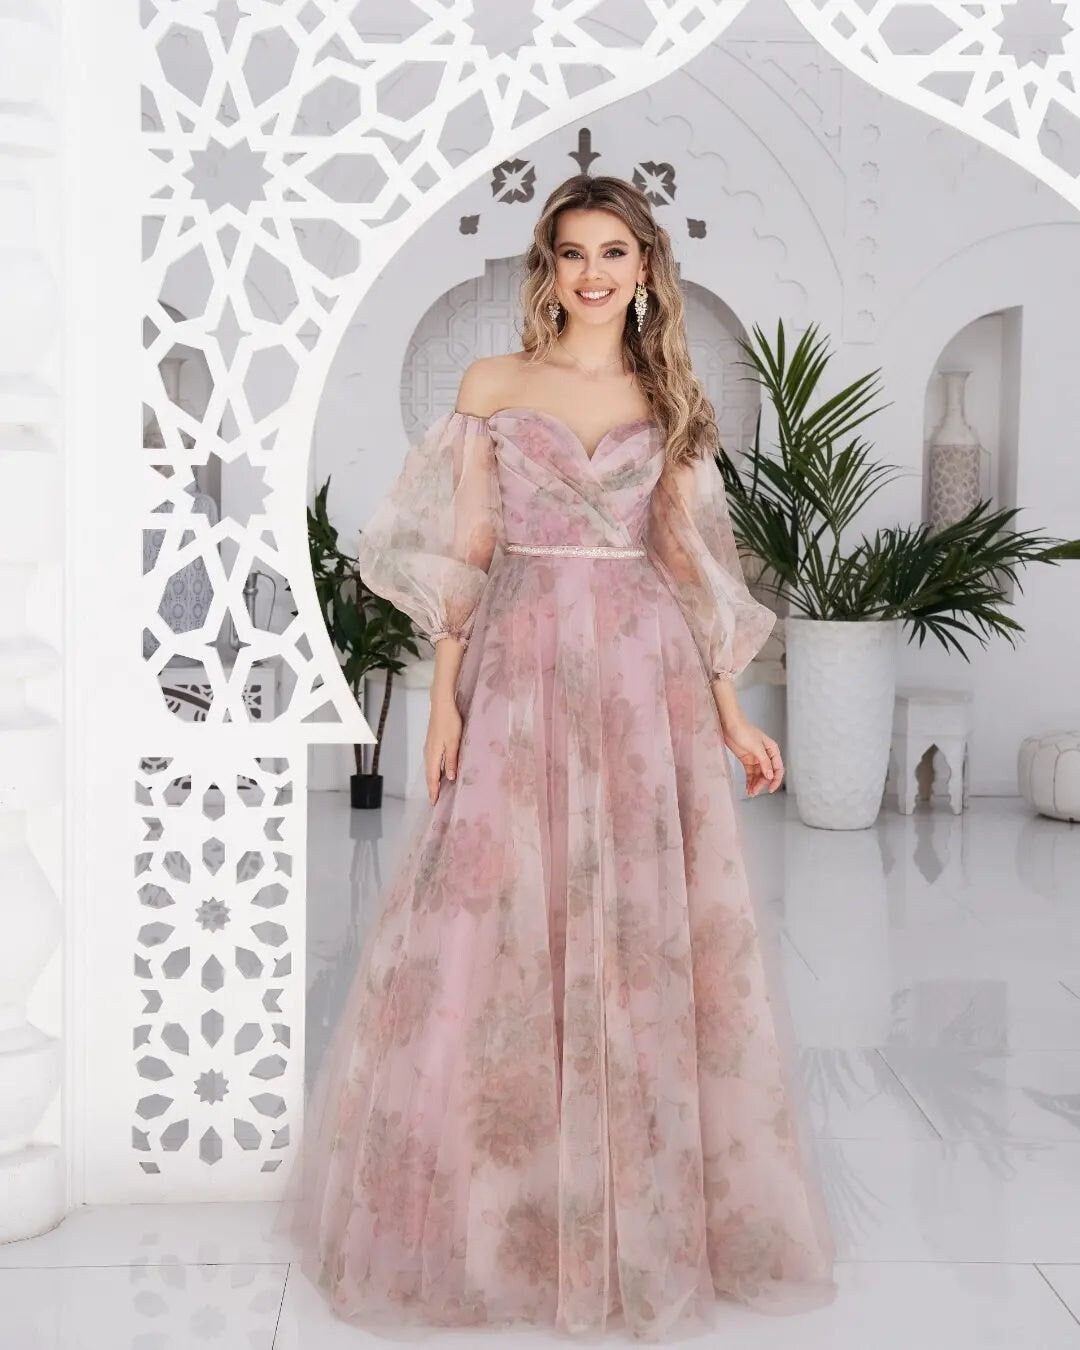 Romantic Floral Print Flower Design Off the Shoulder Aline Wedding Dress Bridal Gown V Neckline Long Sleeve Pink Corset Open Back